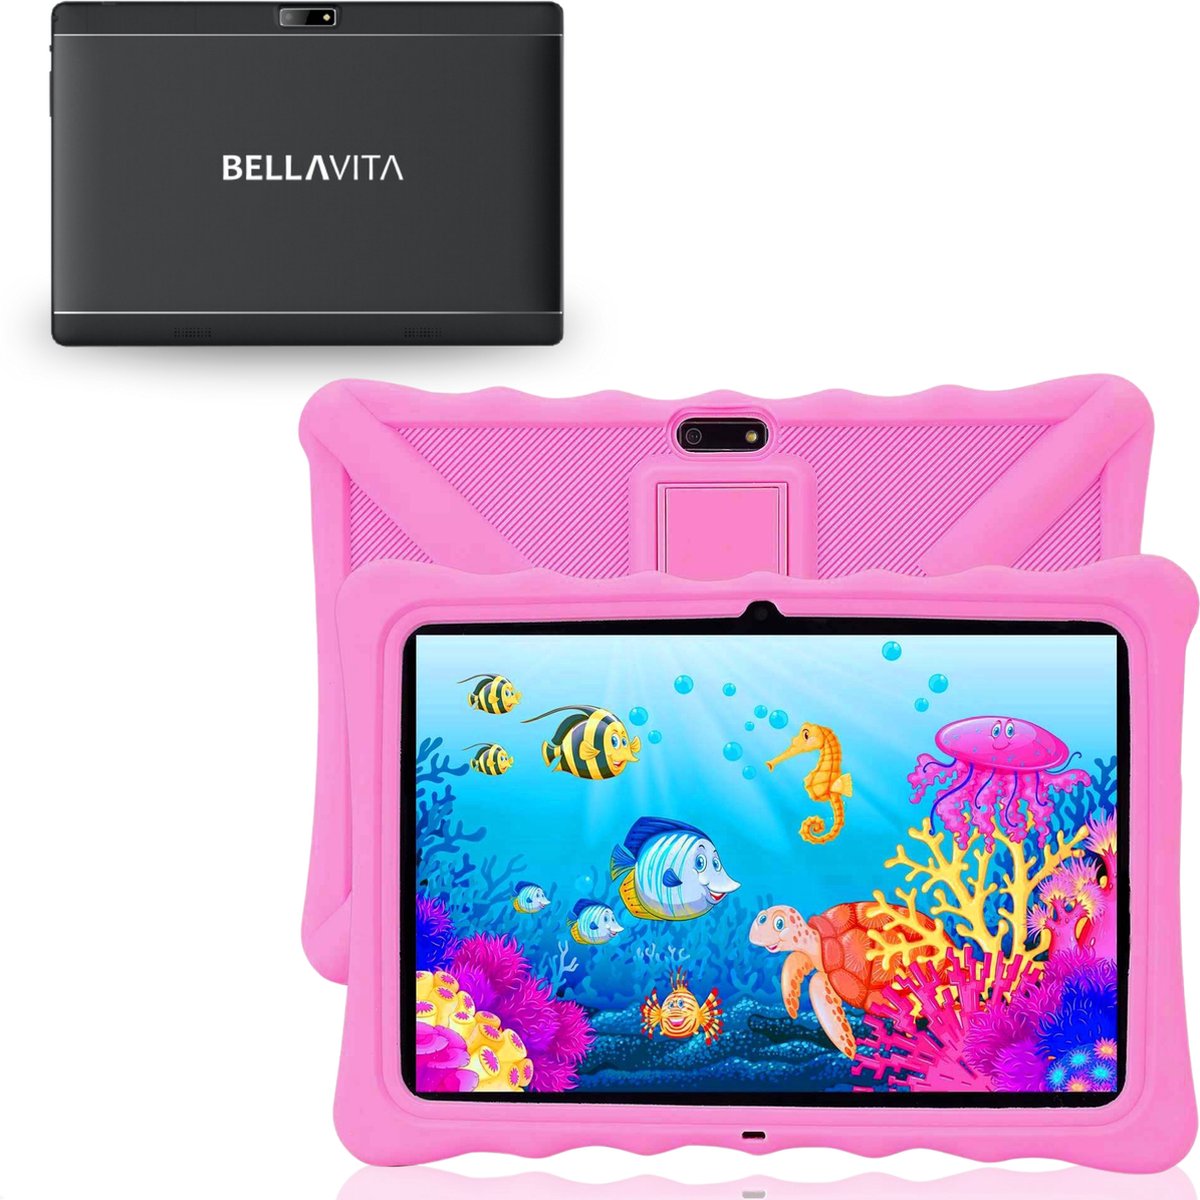 BELLAVITA ® Bambini Pad XL - Kindertablet - 10.1 inch - Tablet - Roze - 192 GB Opslag – 64 GB + 128GB SD Kaart - Vanaf 3 Jaar – 100% Kidsproof – Ouderlijk Toezicht